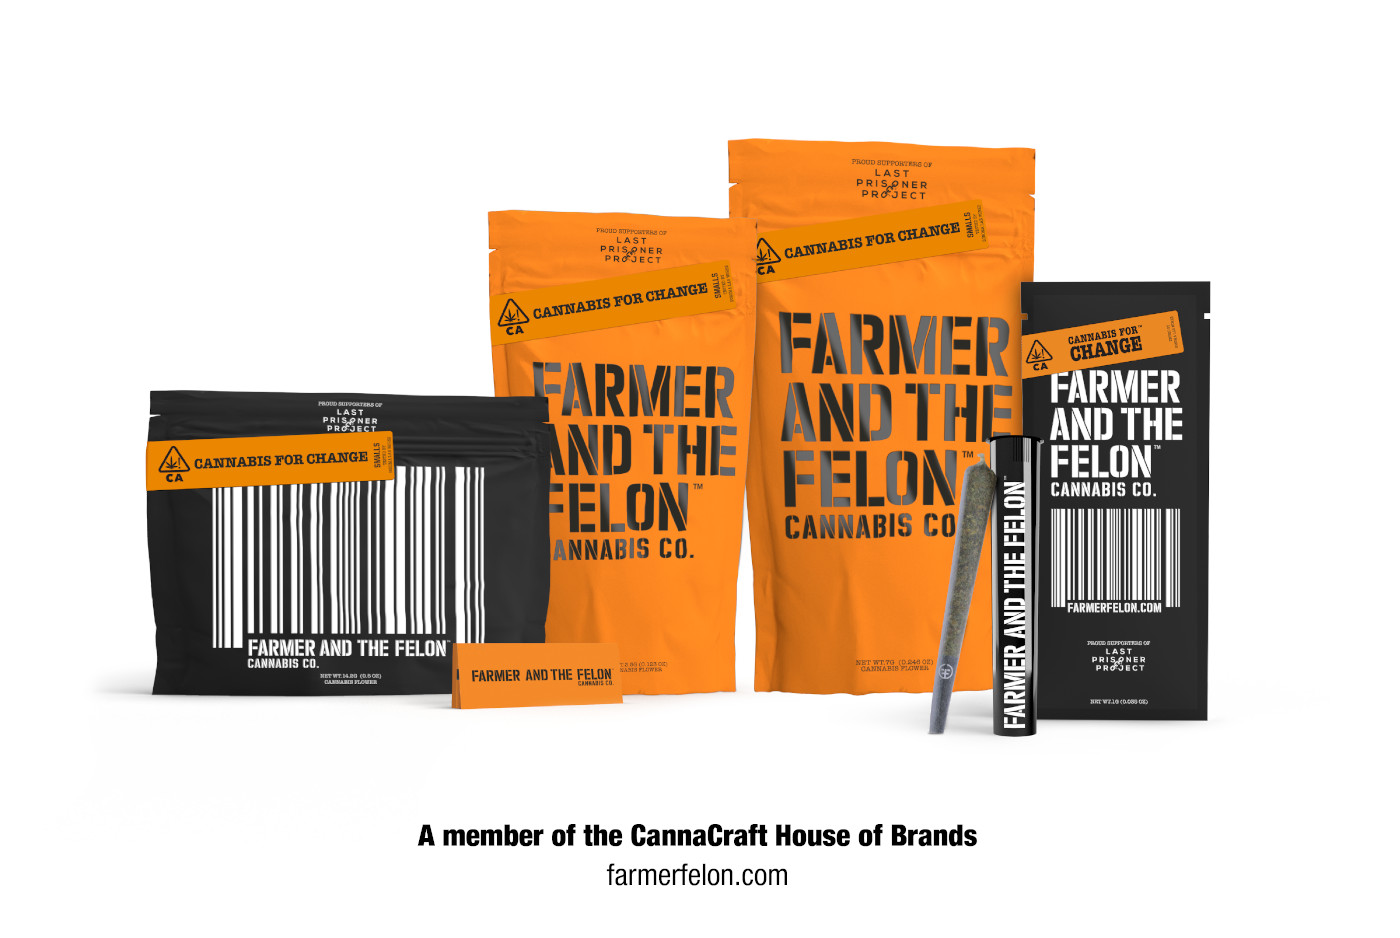 Farmer and the Felon CannaCraft cannabis brand mgretailer